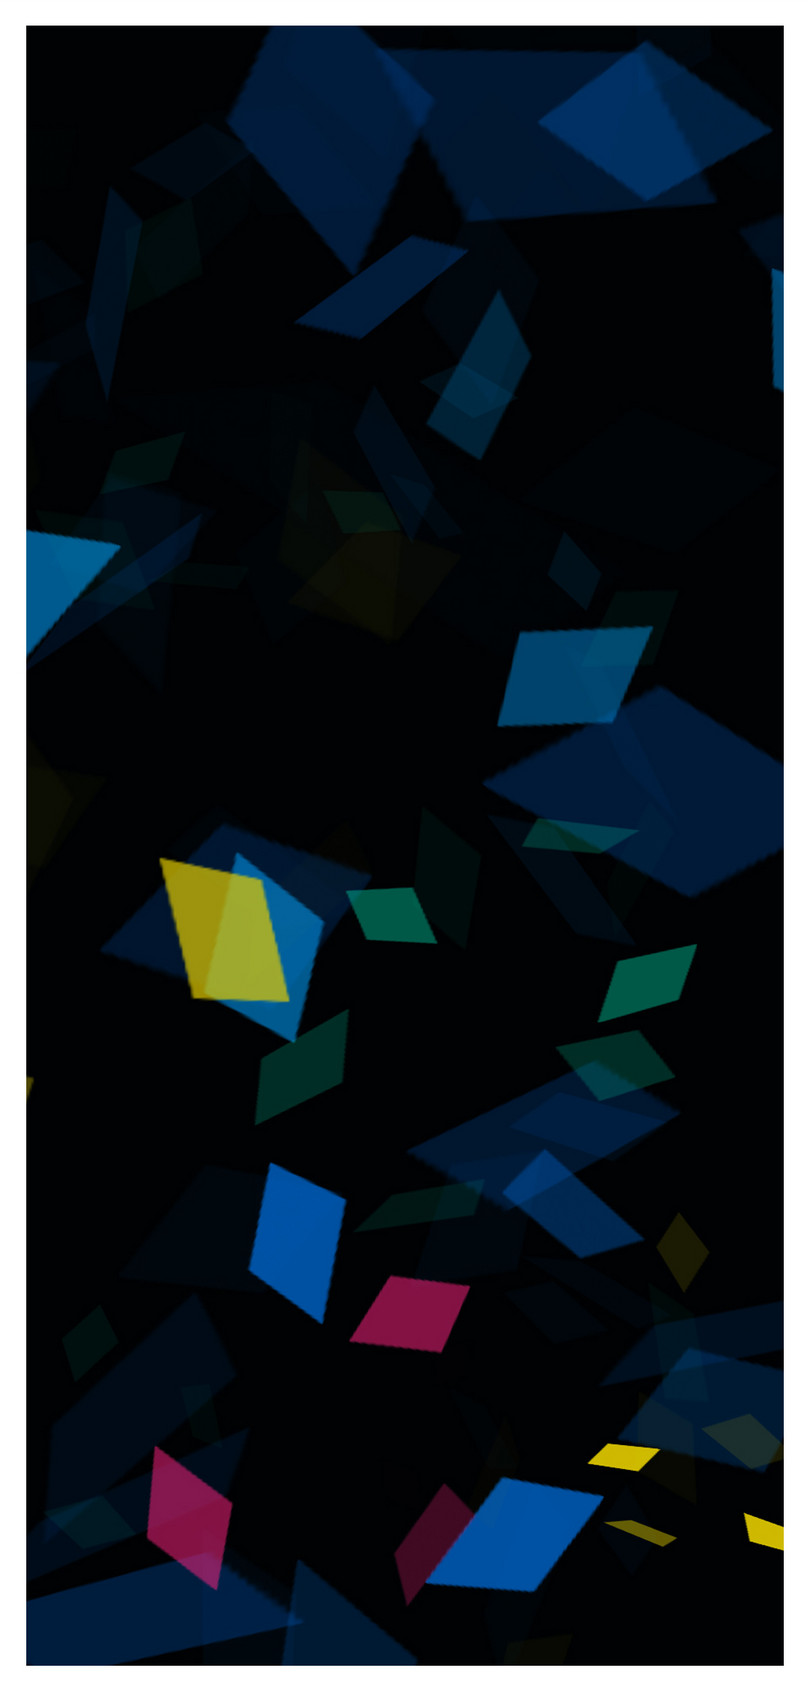 カラー幾何学の携帯壁紙イメージ 背景 Id 400258176 Prf画像